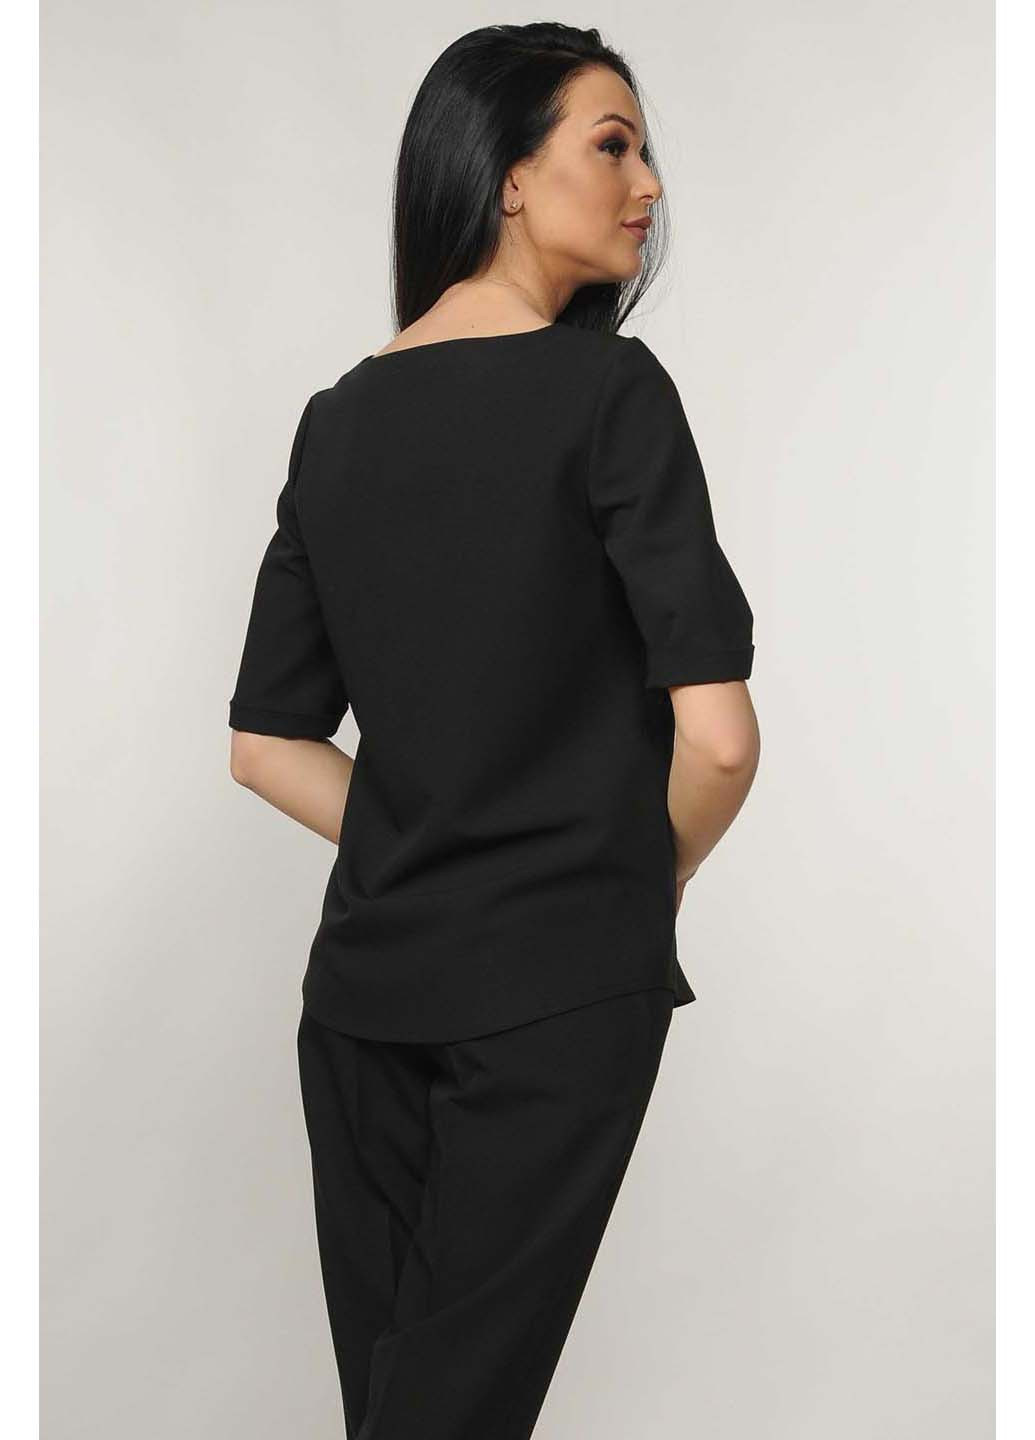 Черная демисезонная блуза Ри Мари